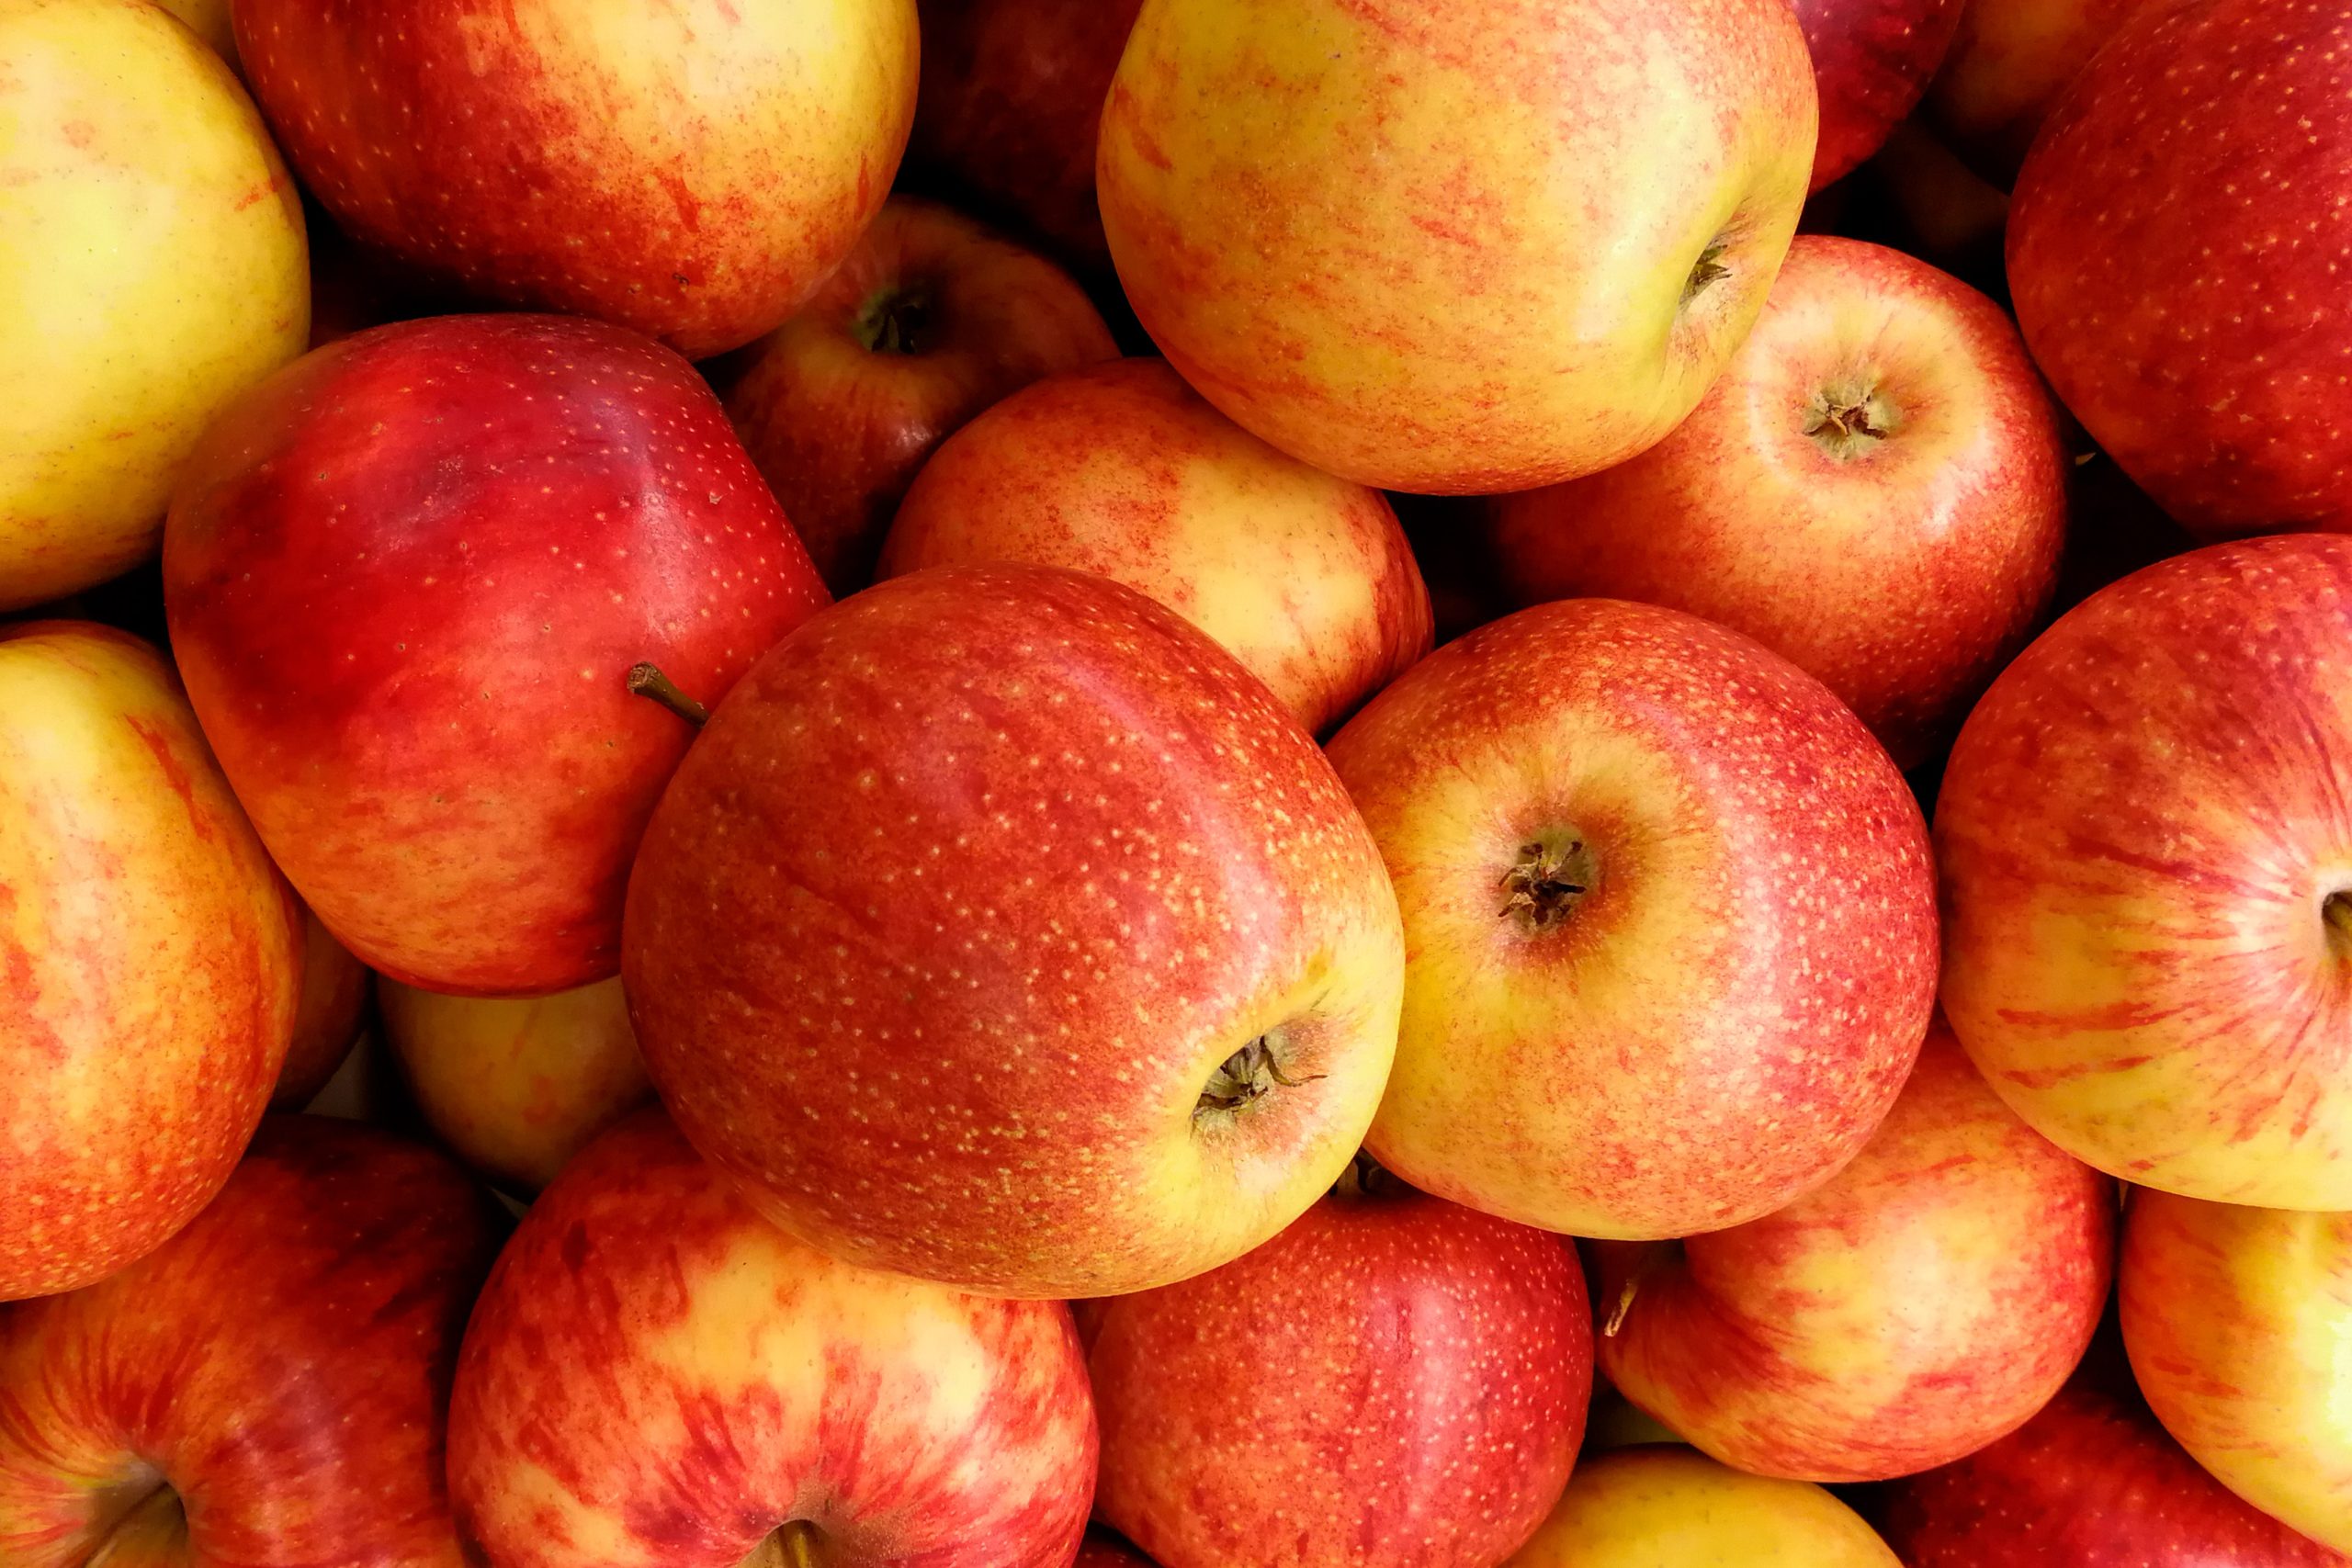 Dijeta sa jabukama koja je savršena posle praznika: Recite zbogom gladi i holesterolu i obavezno zapišite jelovnik!